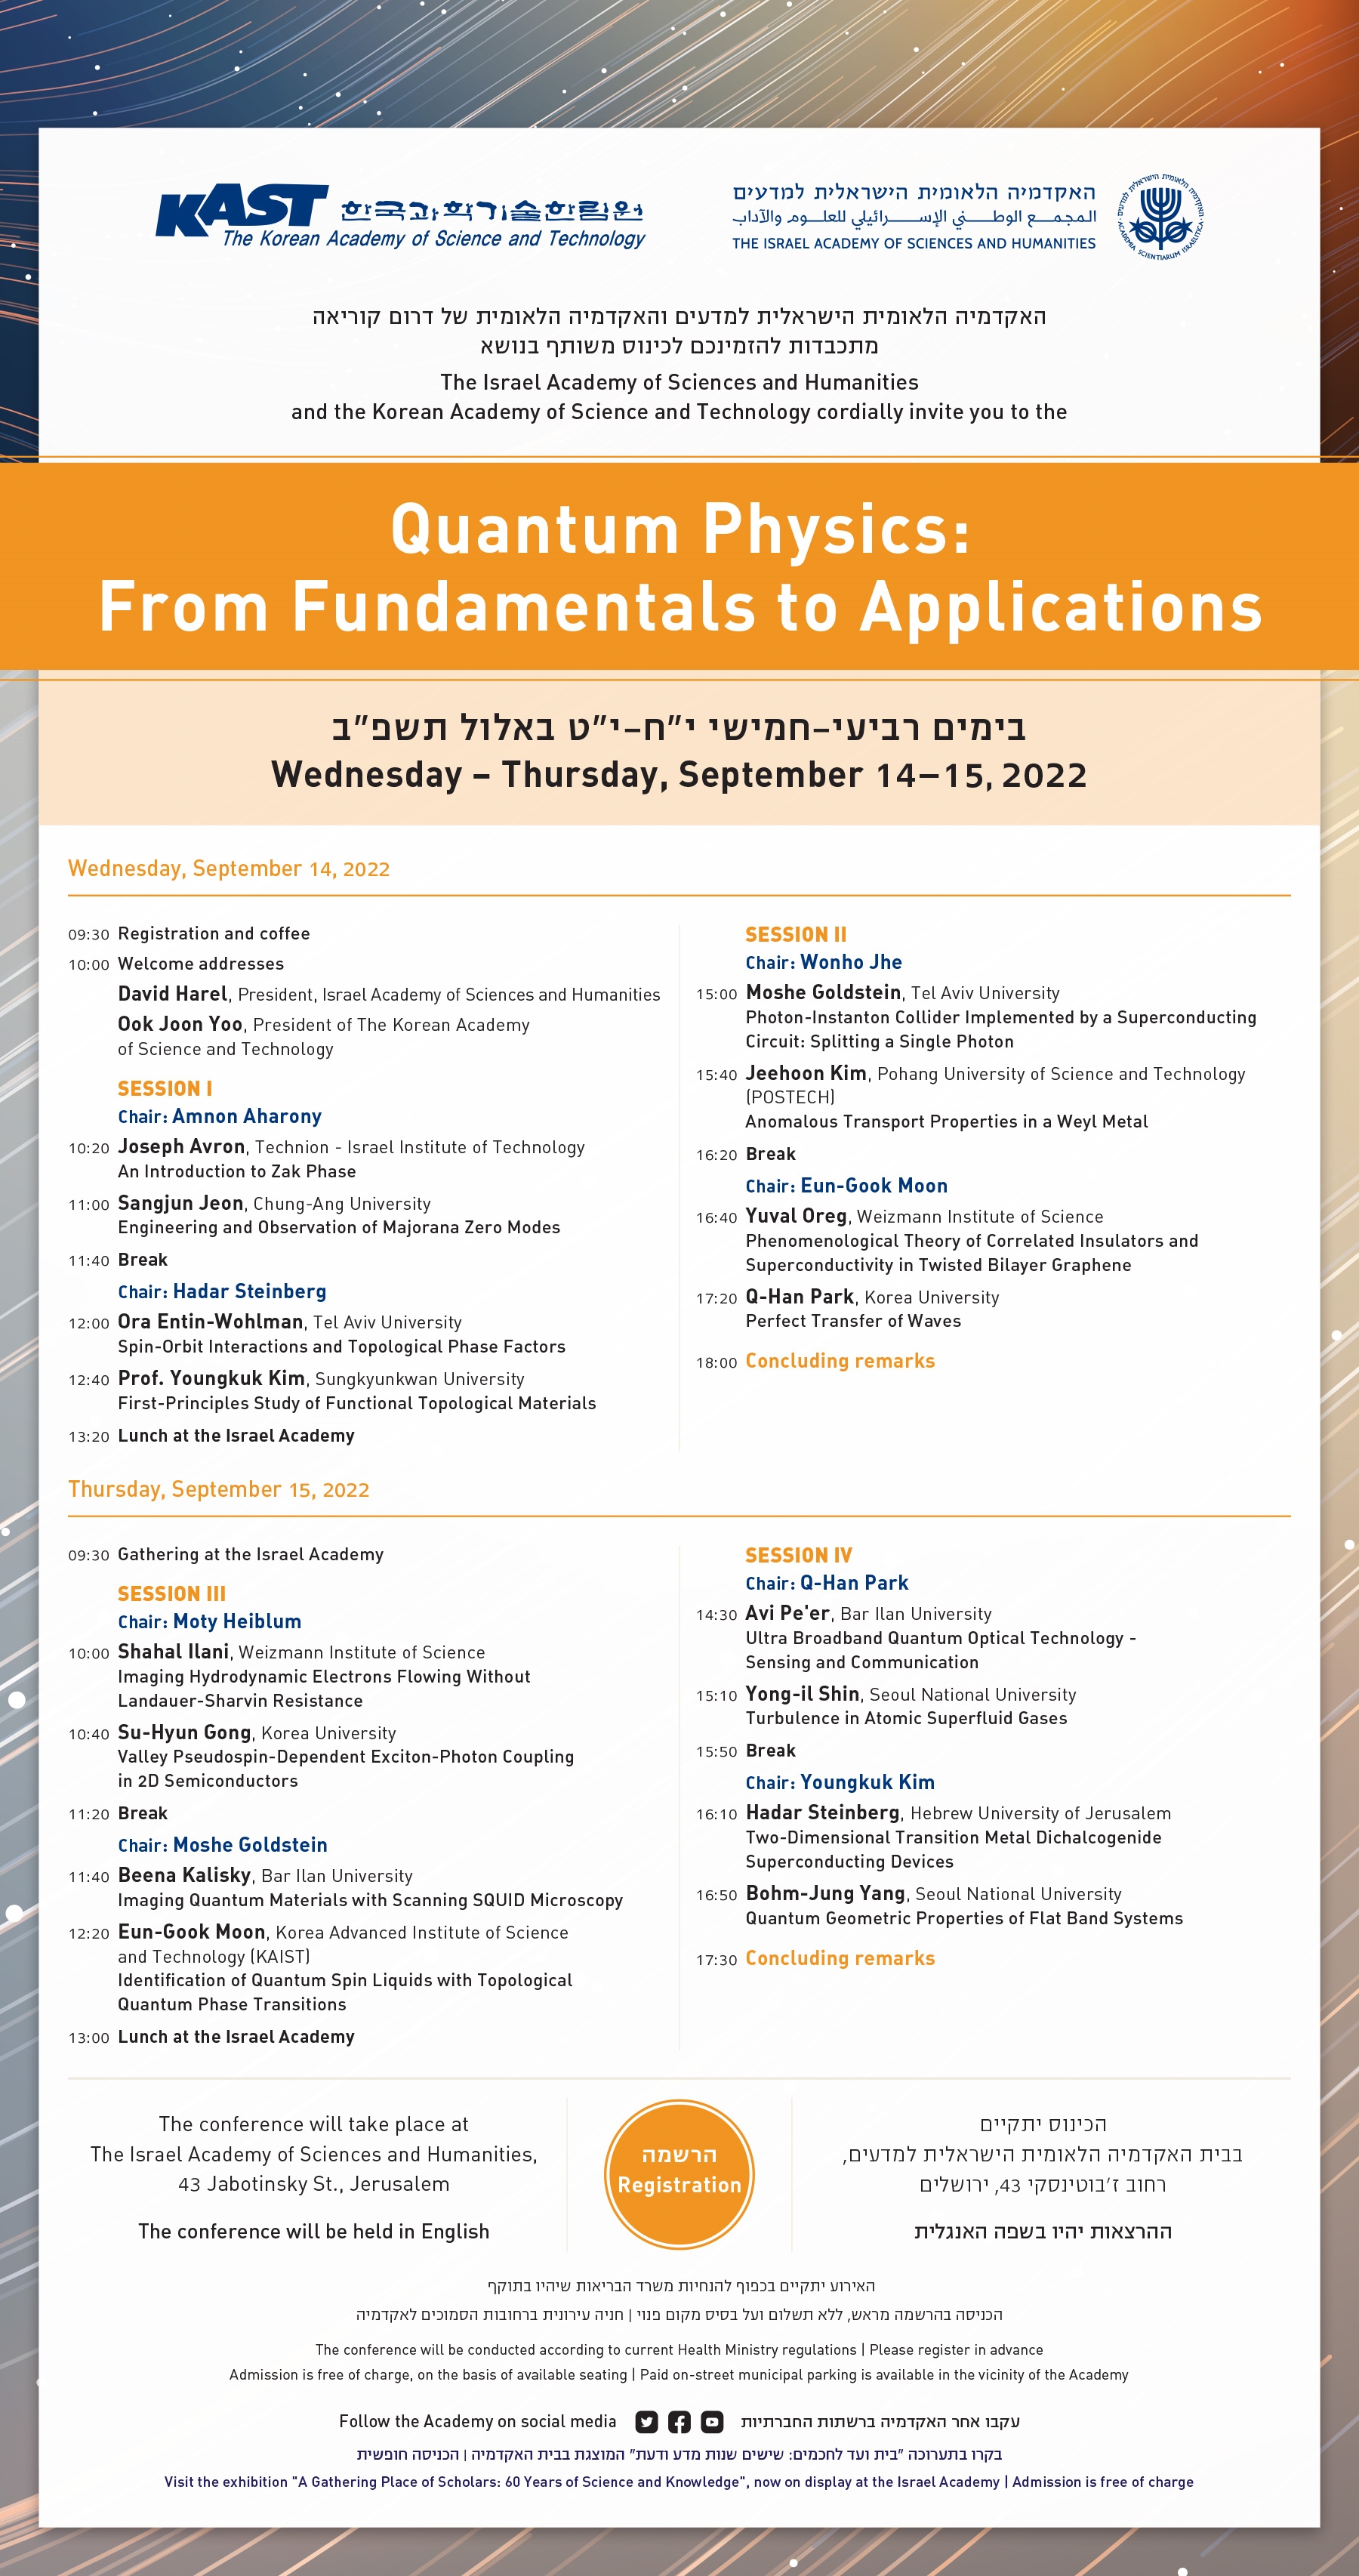 כינוס משותף עם האקדמיה הלאומית של דרום קוריאה בנושא Quantum Physics: From Fundamentals to Applications